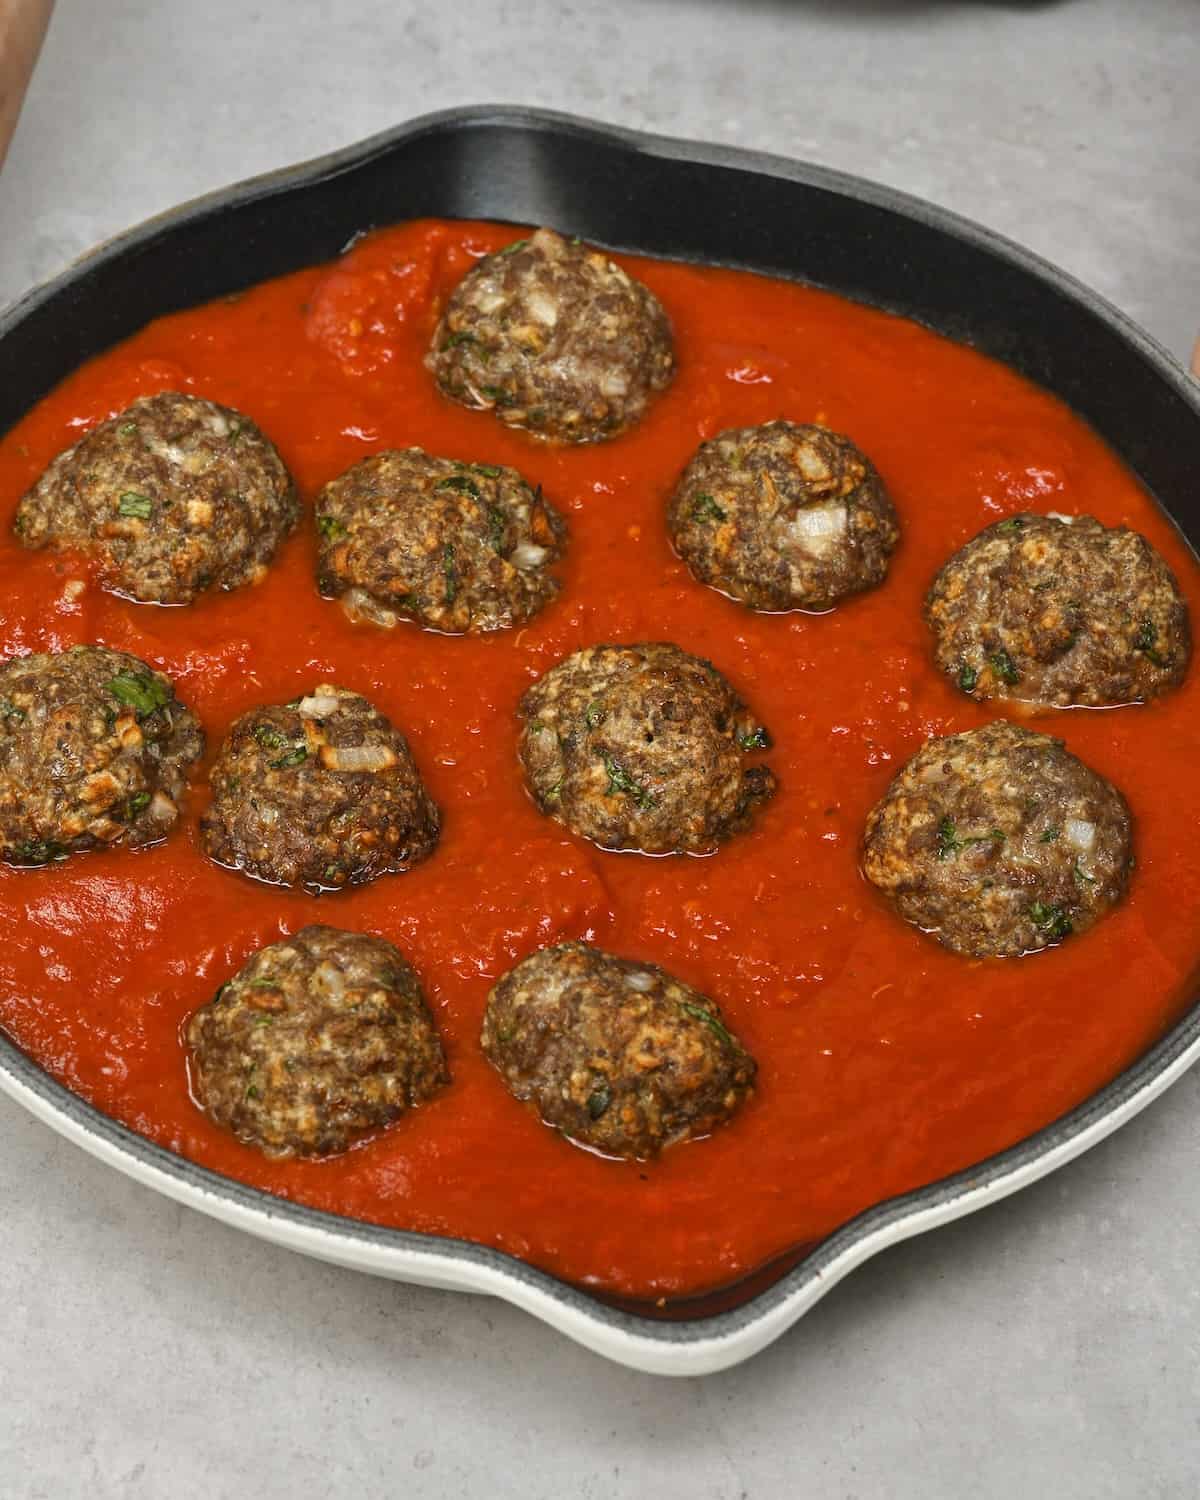 Italian meatballs in marinara sauce